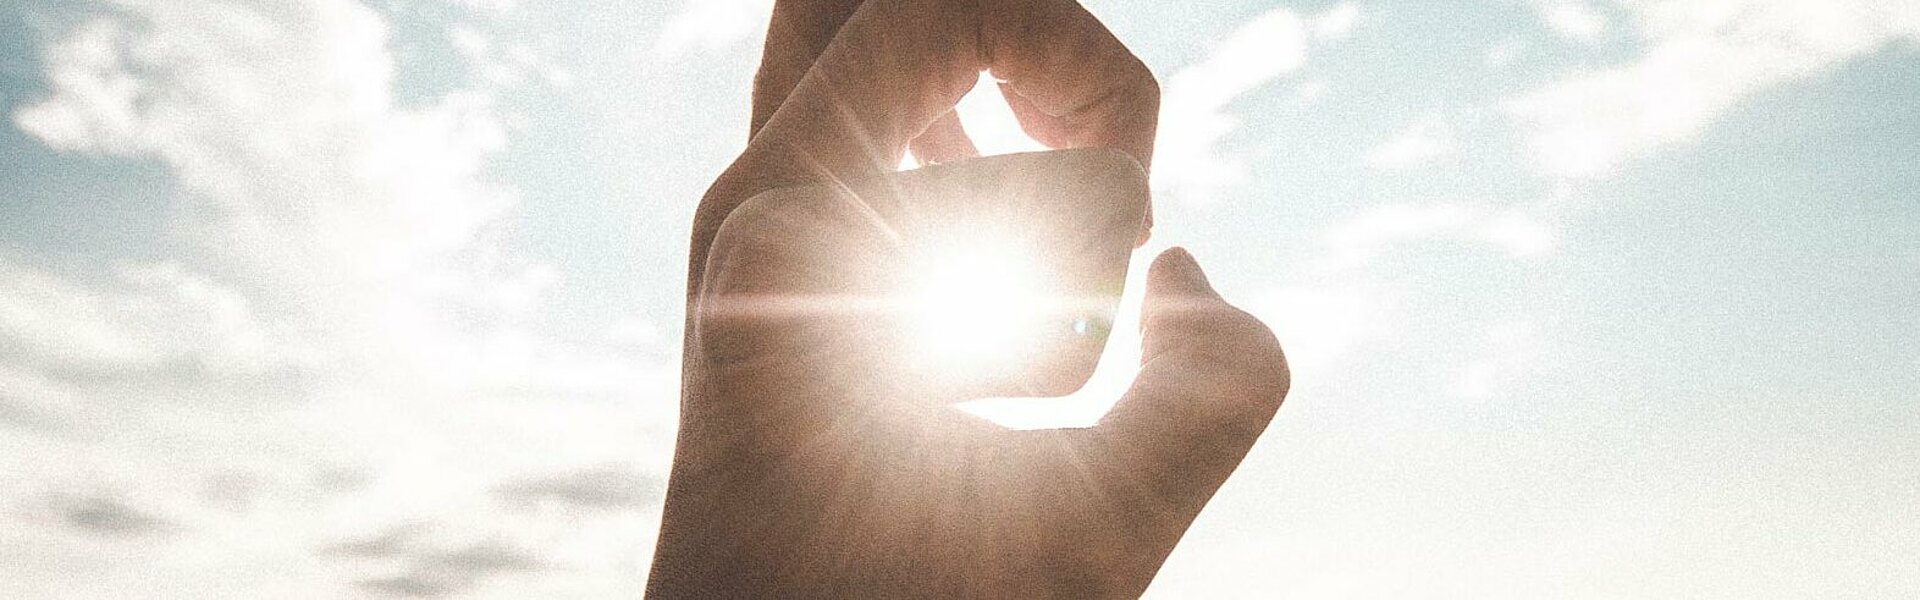 Hand die die Sonne am Himmel umrahmt als Symboldbild für FAQ zu Photovoltaik (Photo by Daoudi Aissa on Unsplash, https://unsplash.com/photos/absT1BNRDAI)